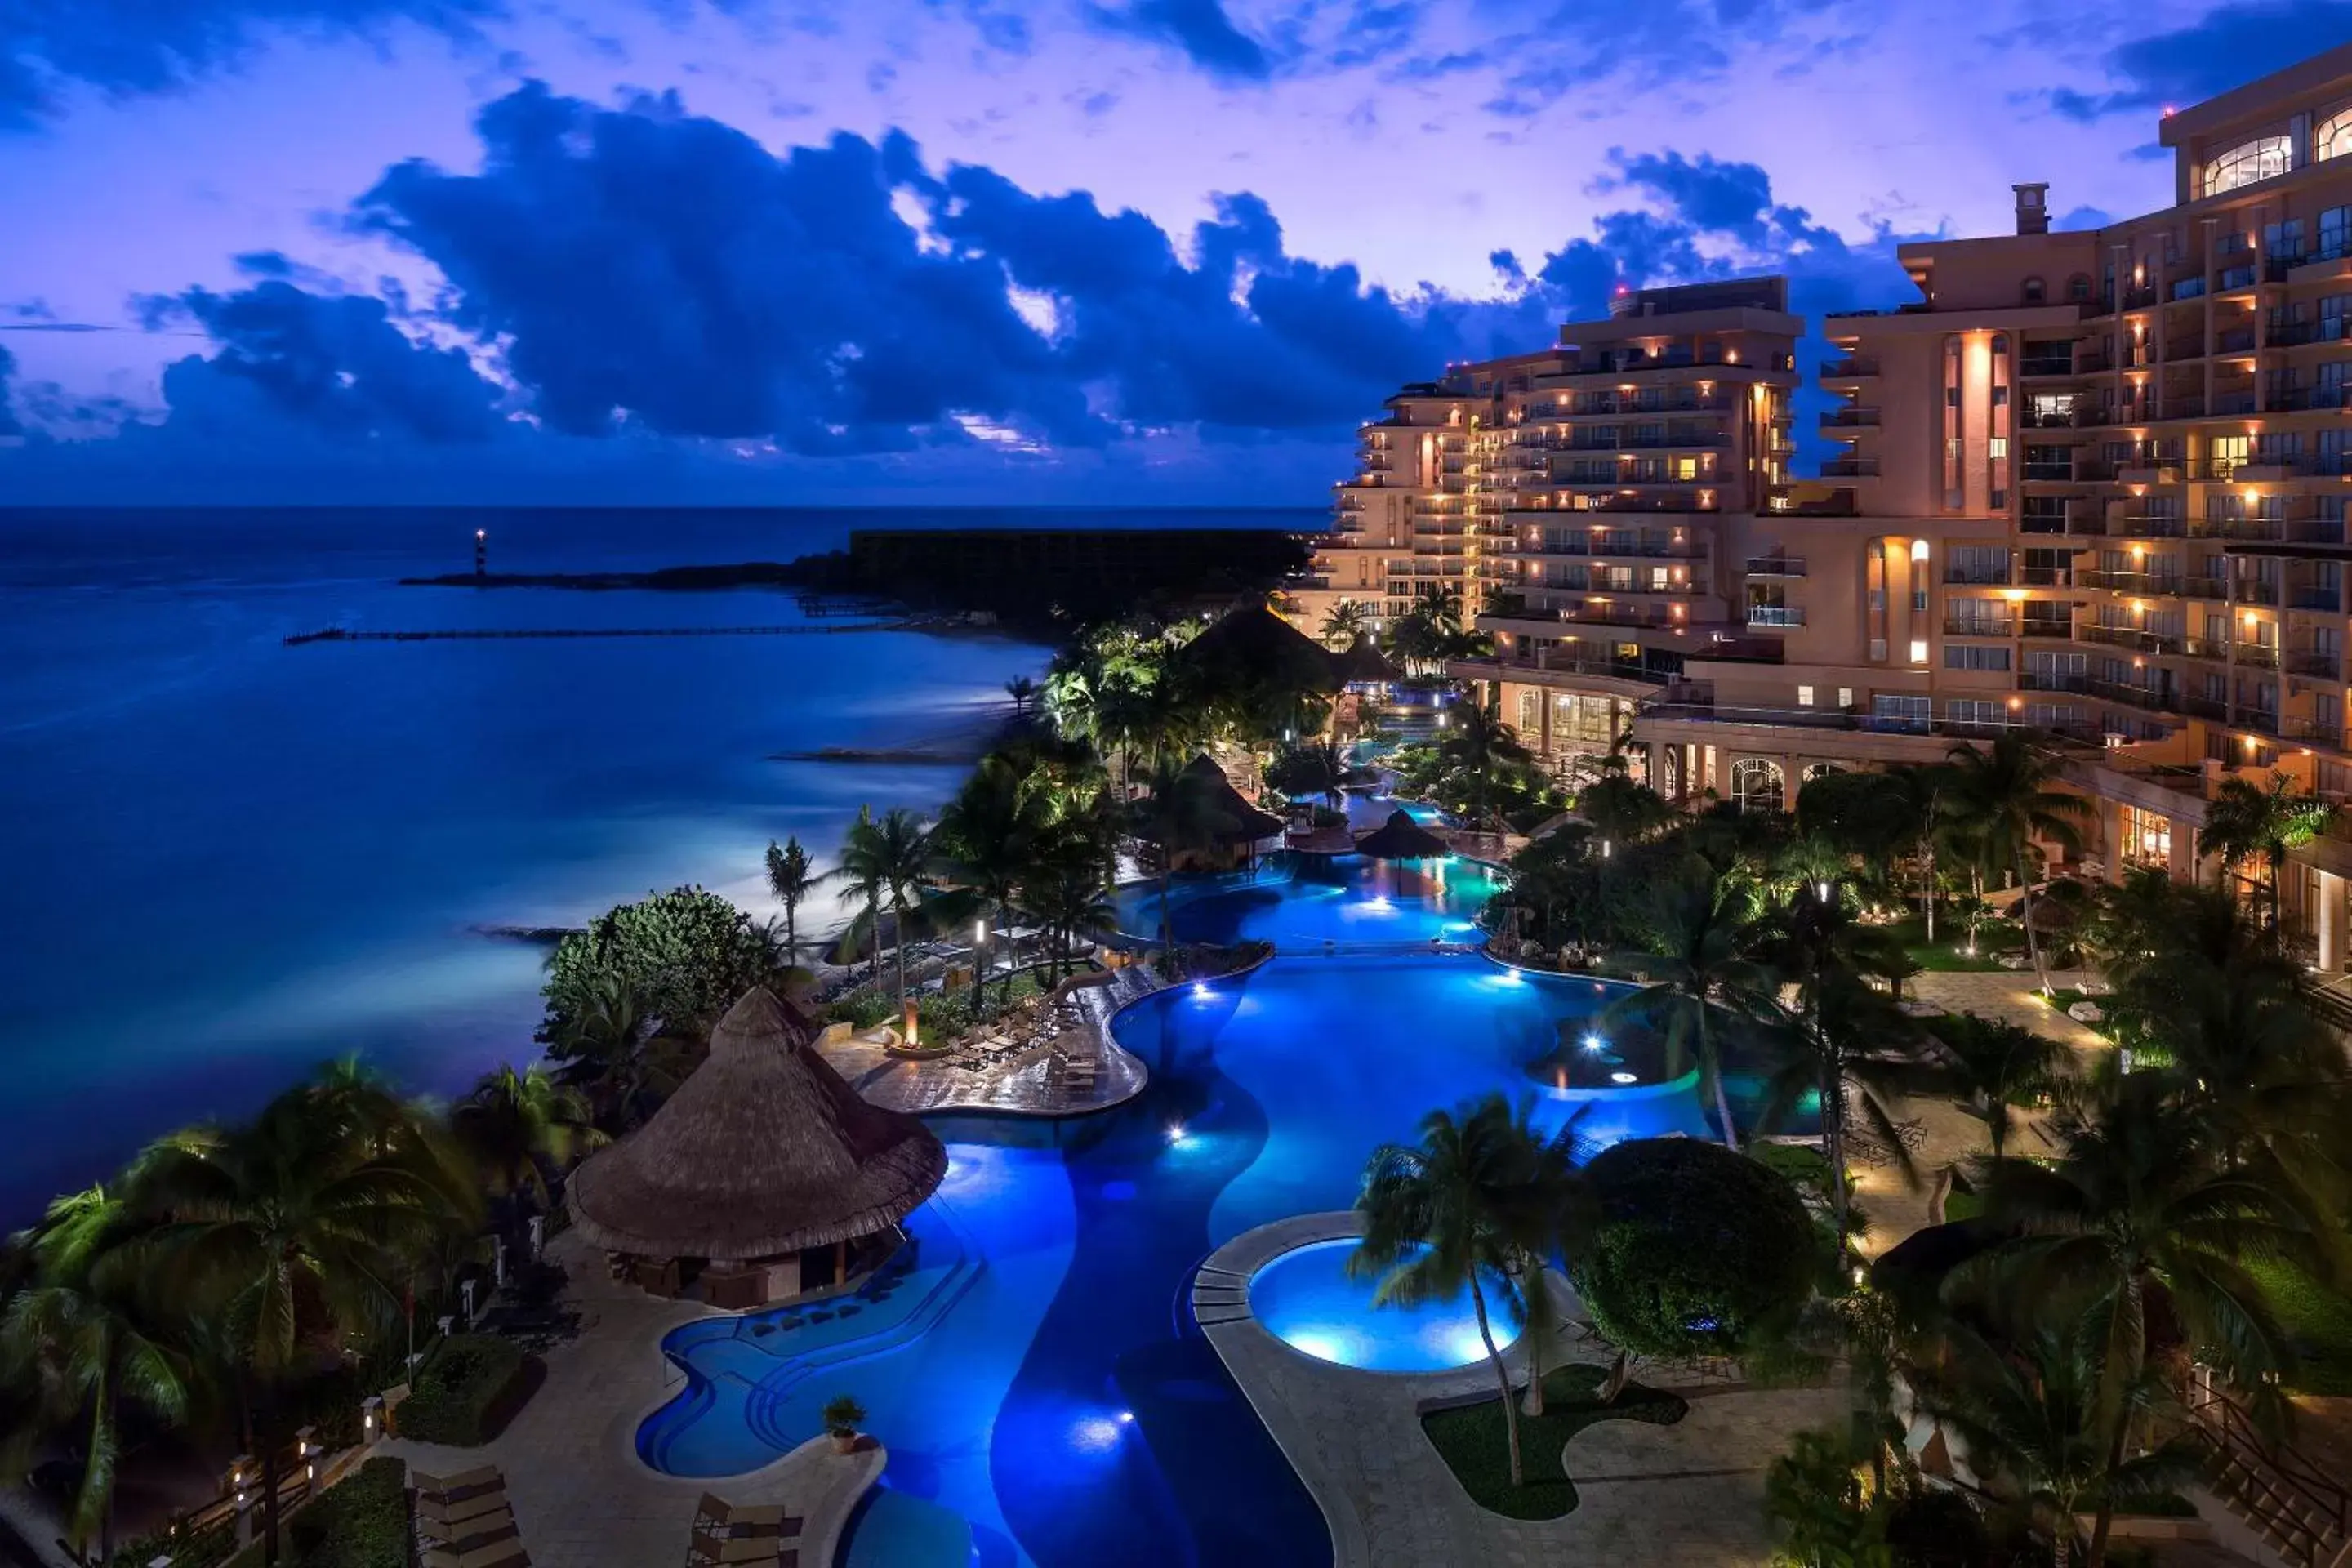 Property building, Pool View in Grand Fiesta Americana Coral Beach Cancun - All Inclusive